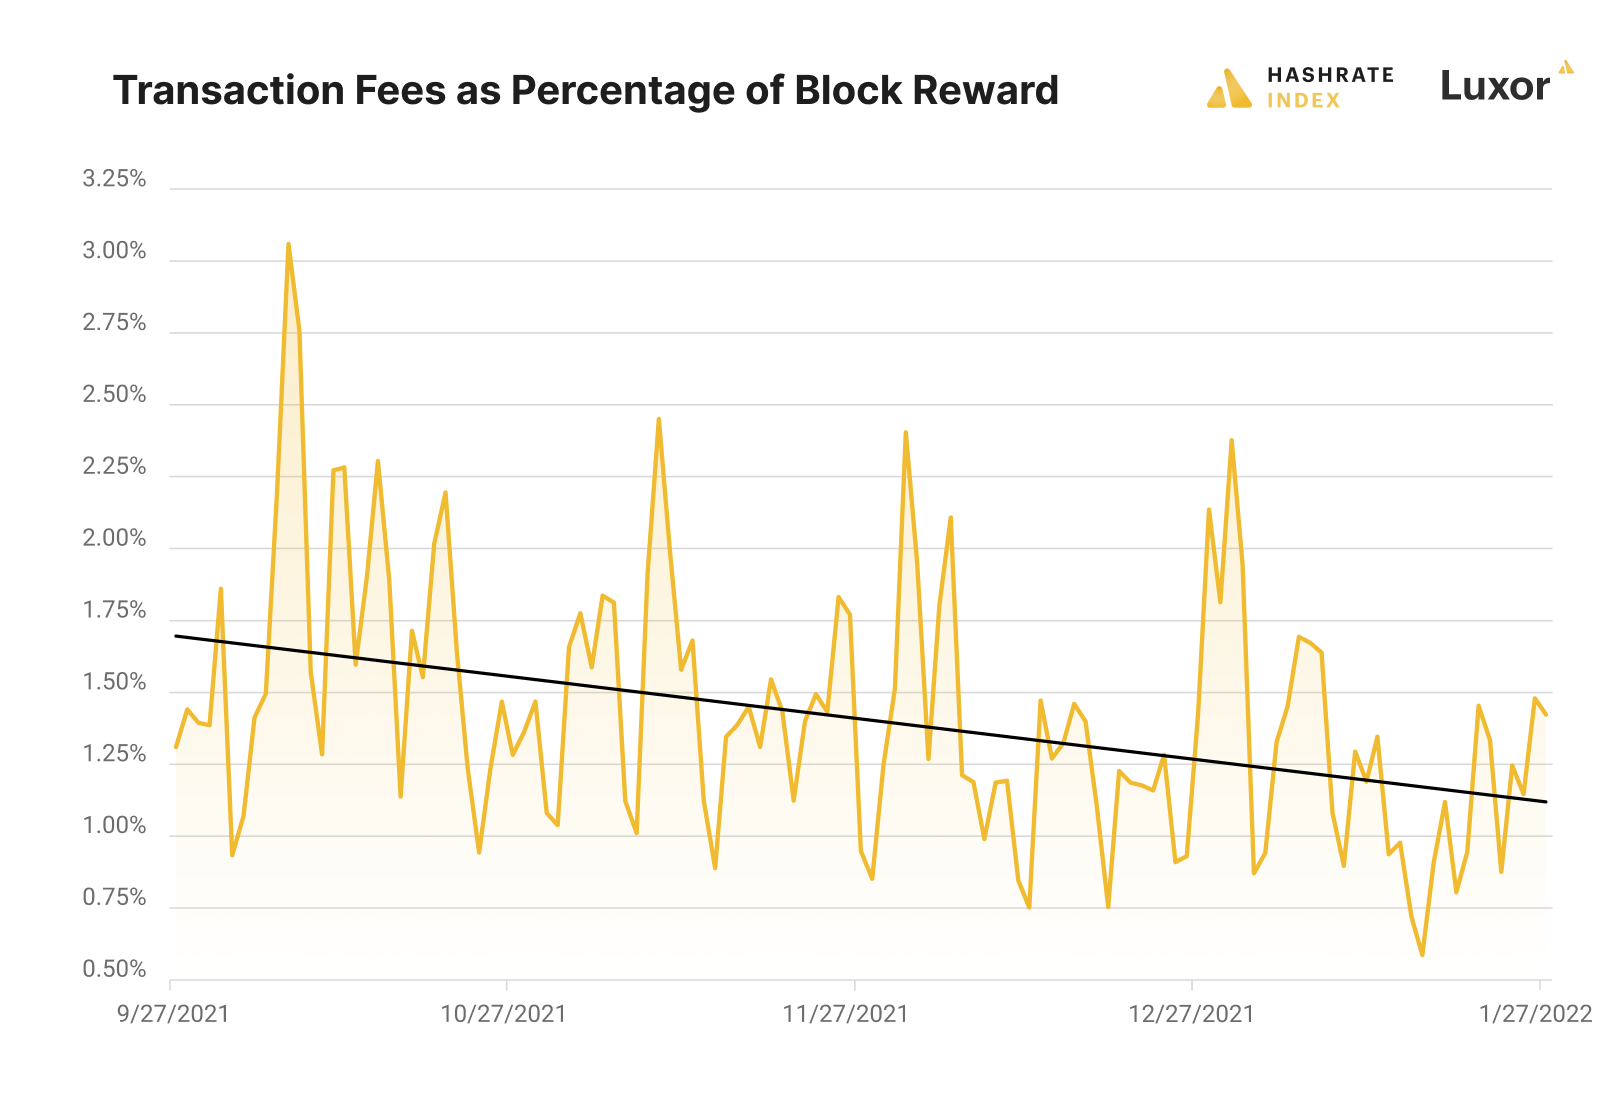 Bitcoin Mining Transaction Fees